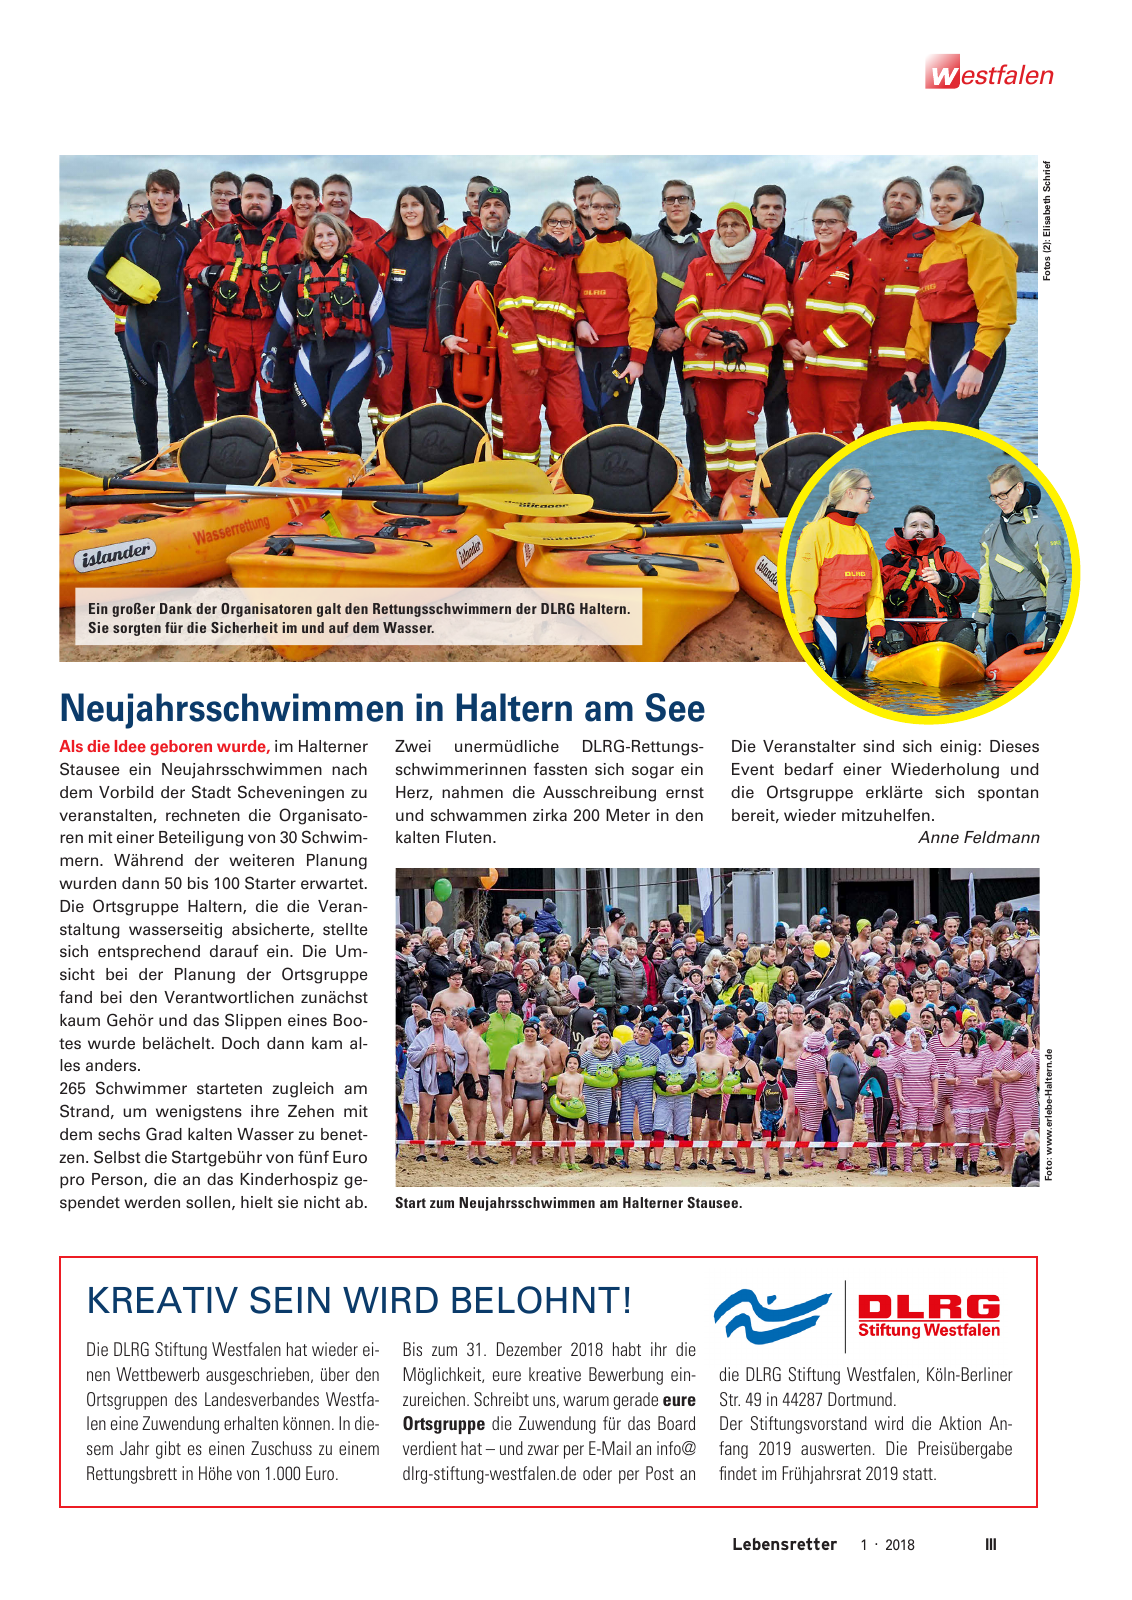 Vorschau Lebensretter 1/2018 - Regionalausgabe Westfalen Seite 5